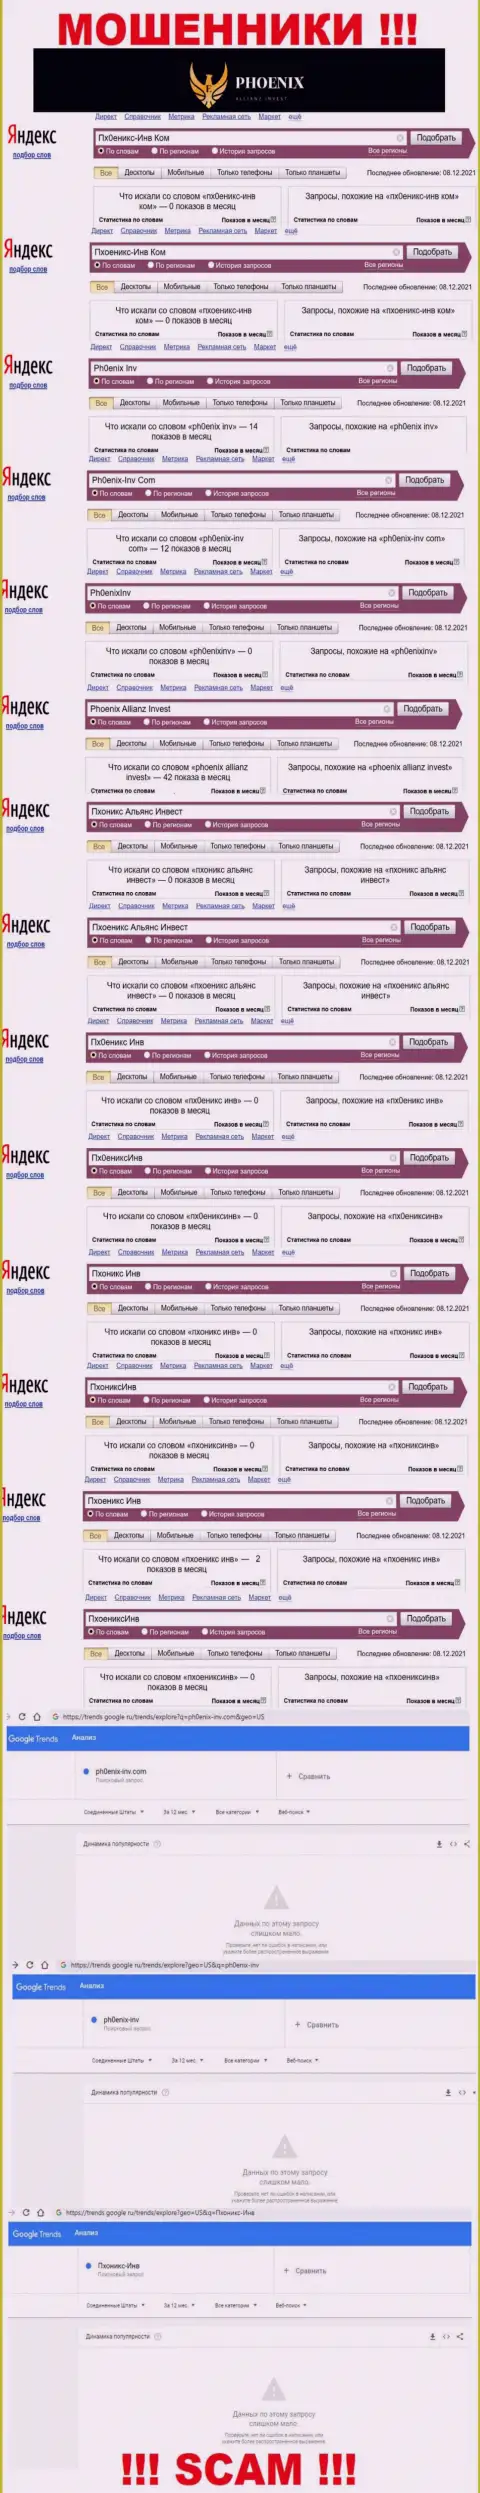 Скриншот результатов поисковых запросов по неправомерно действующей конторе Ph0enix-Inv Com